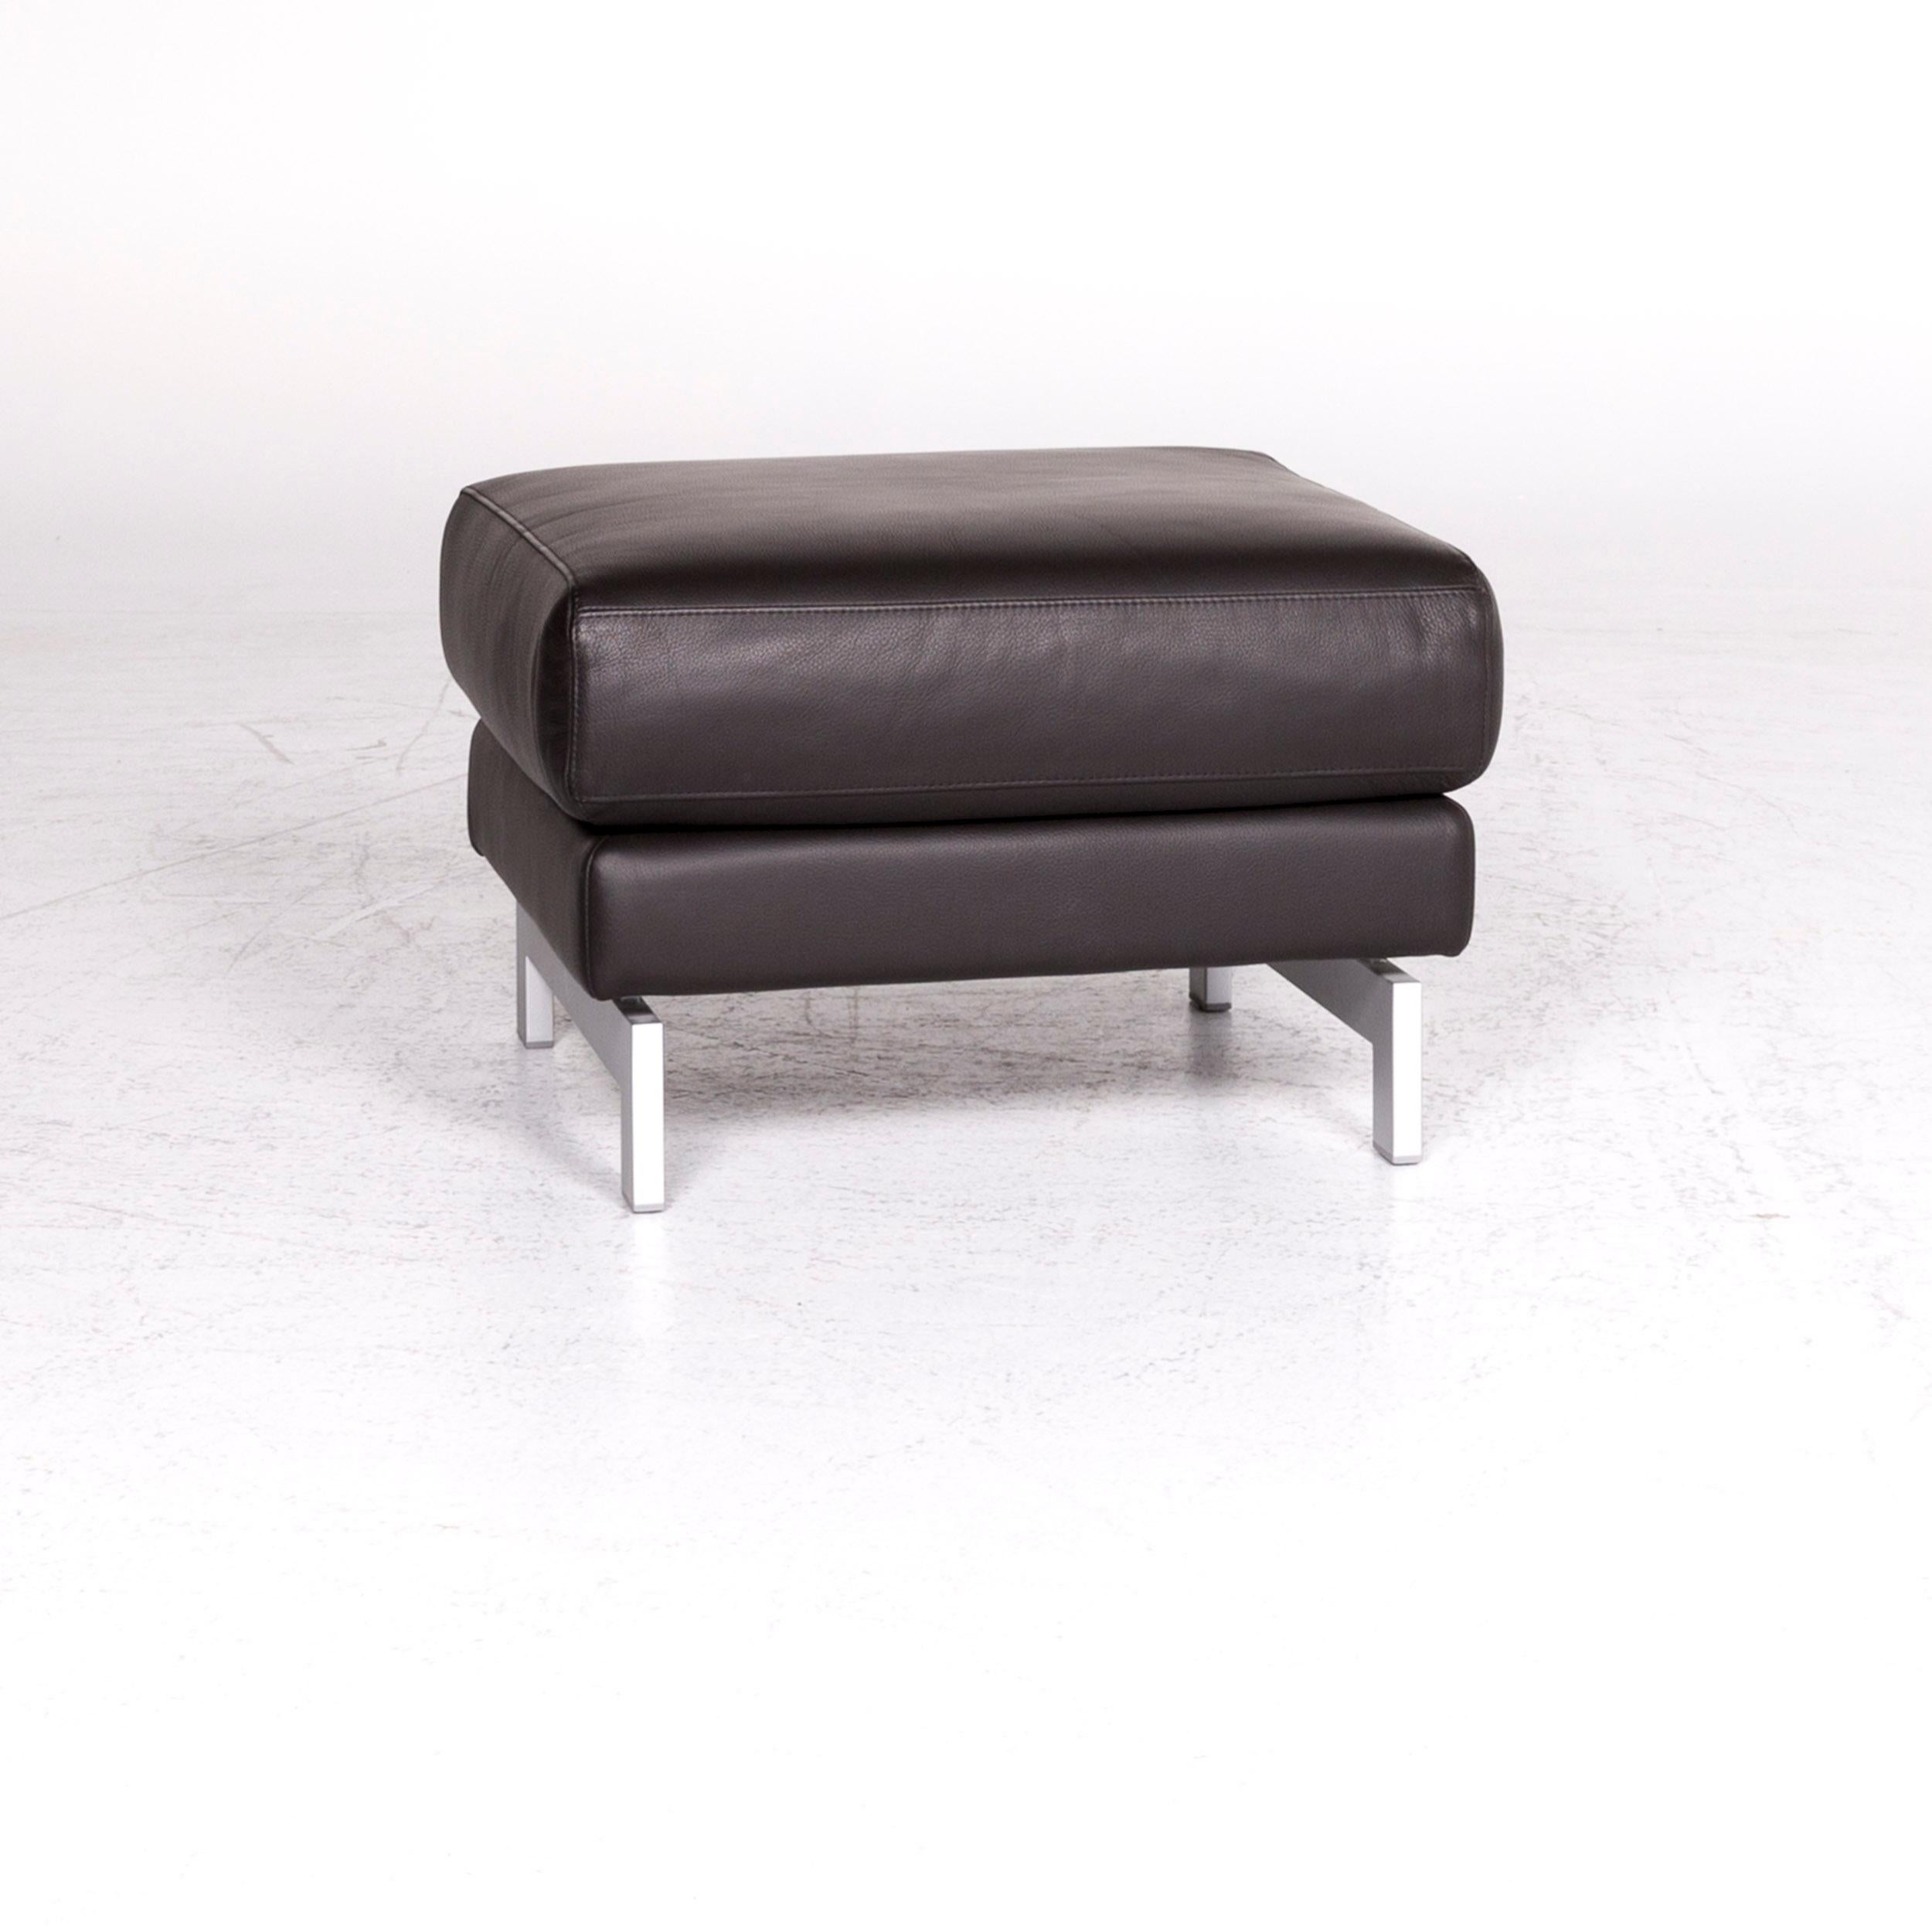 Modern Rolf Benz Vida Designer Leather Stool Brown Footstool For Sale